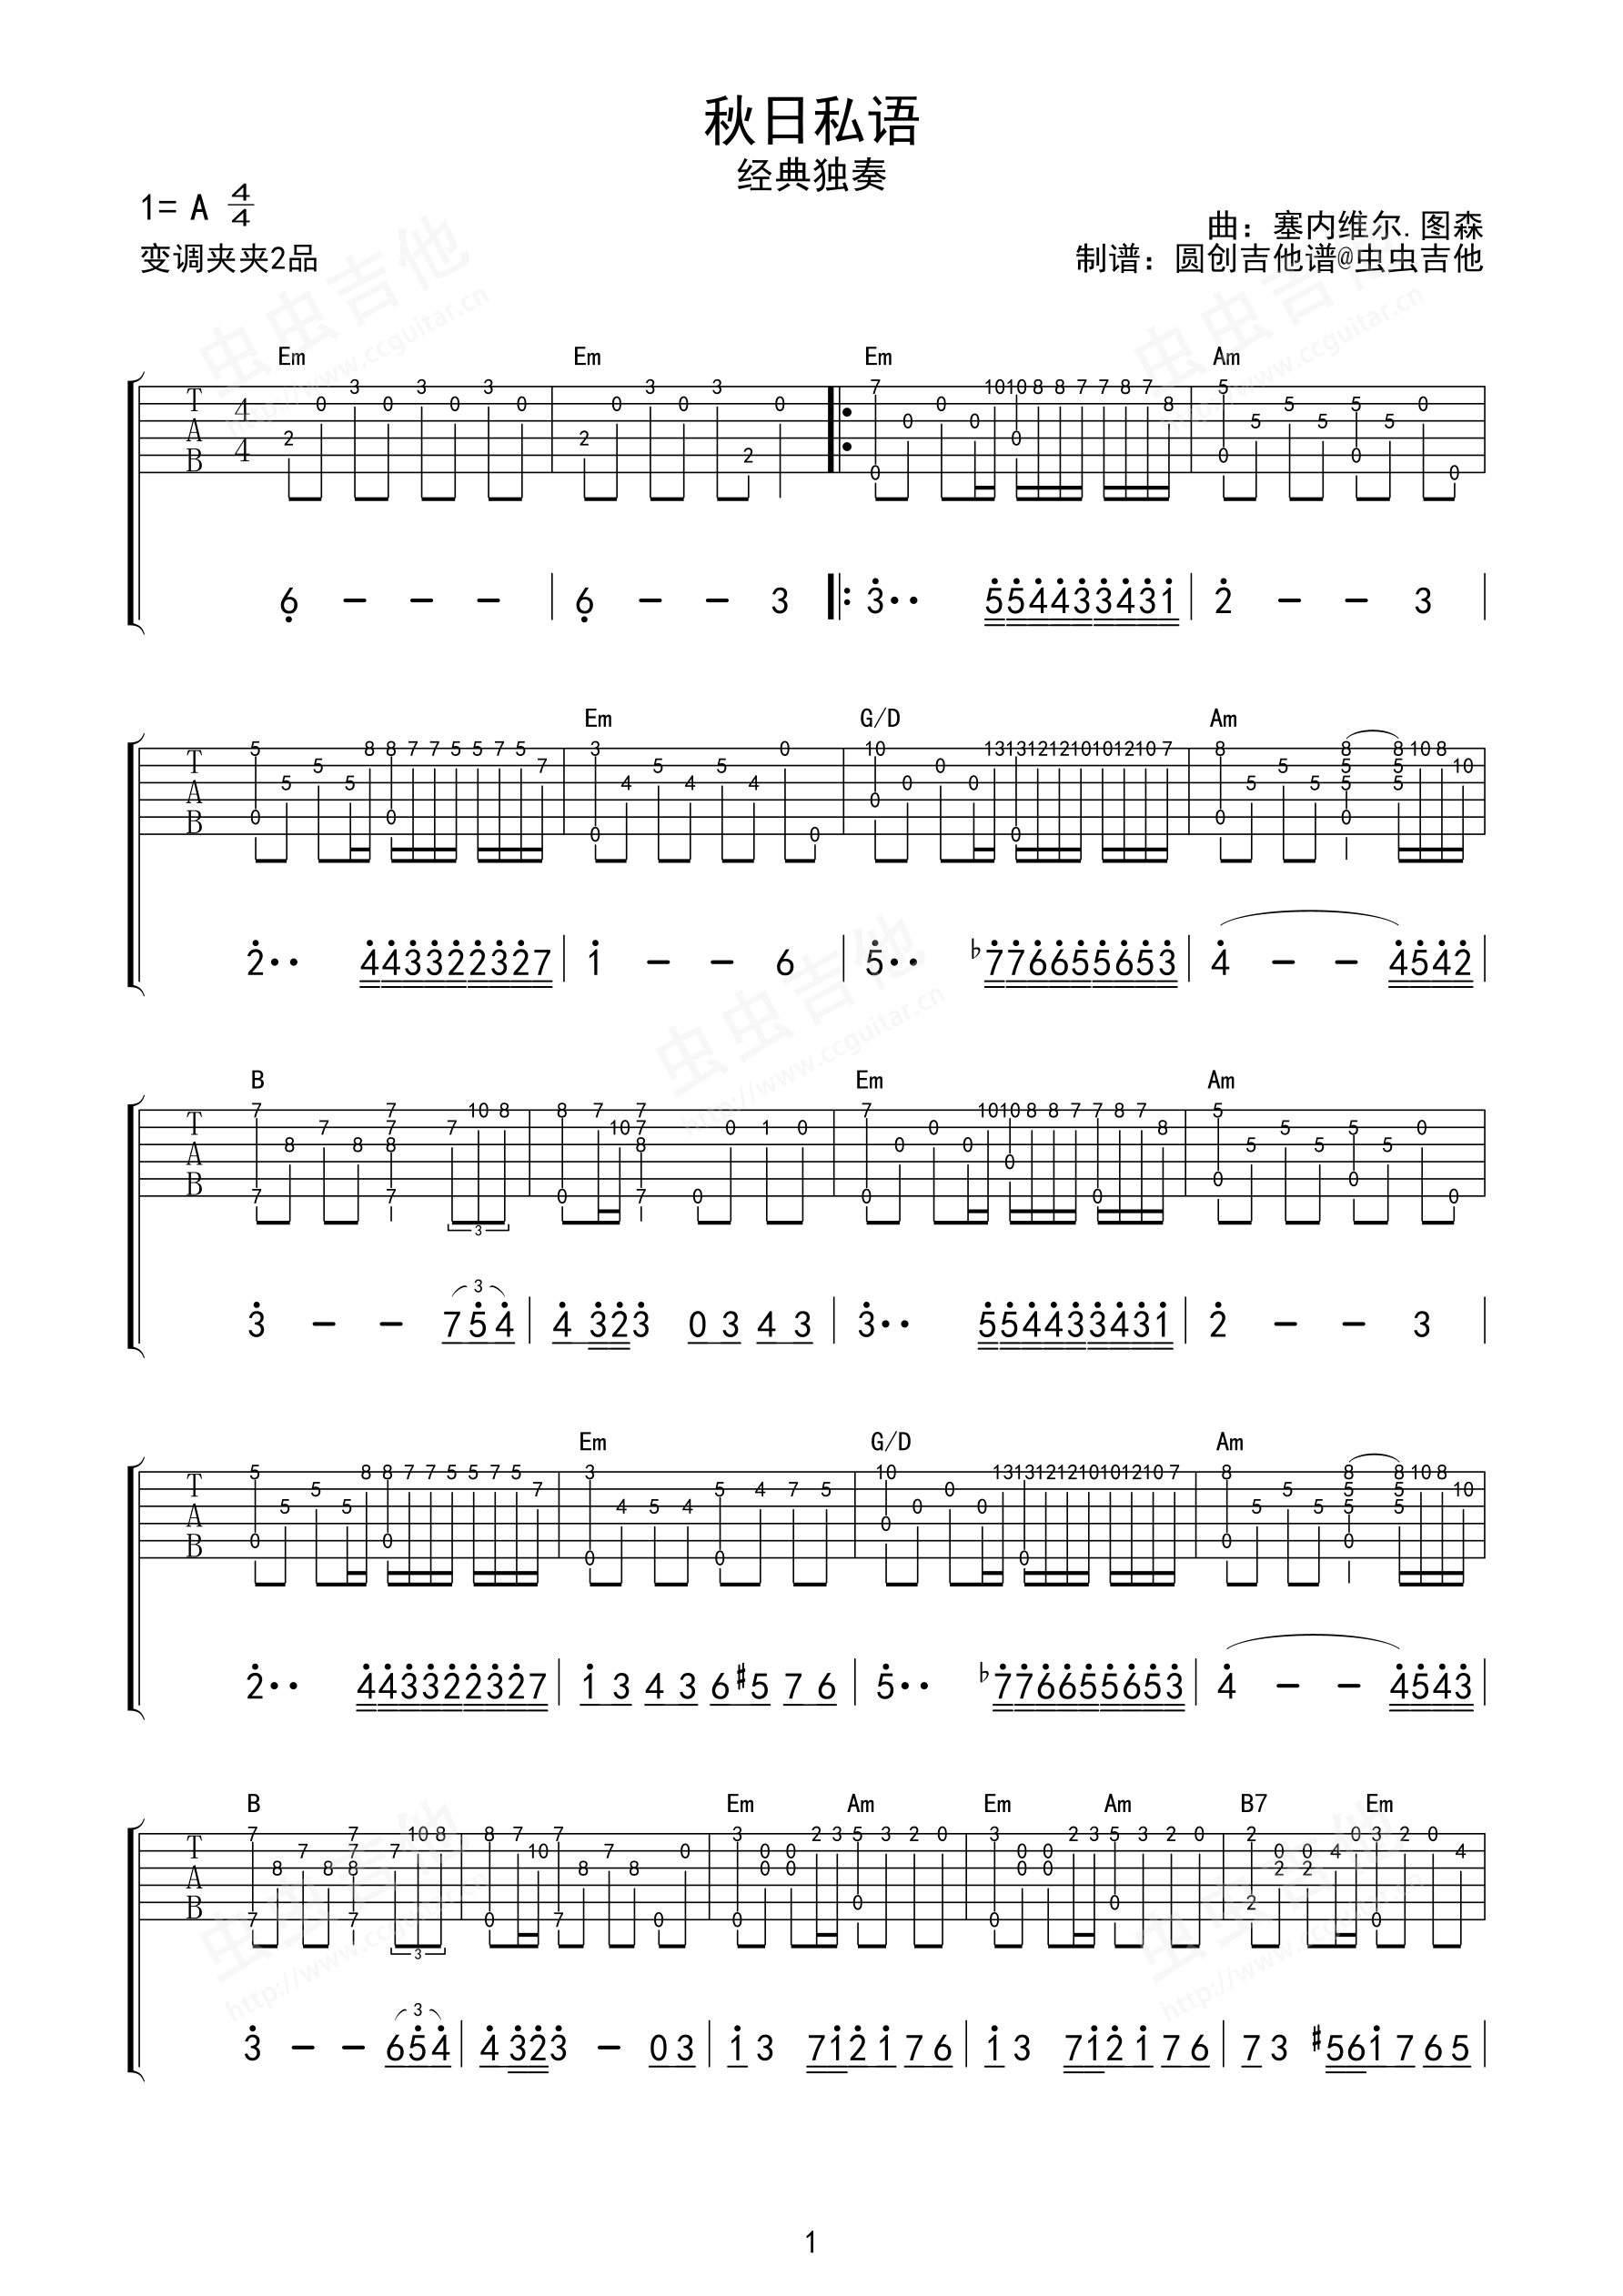 克莱德曼钢琴曲改编的吉他曲《秋日私语》双吉他-吉他曲谱 - 乐器学习网